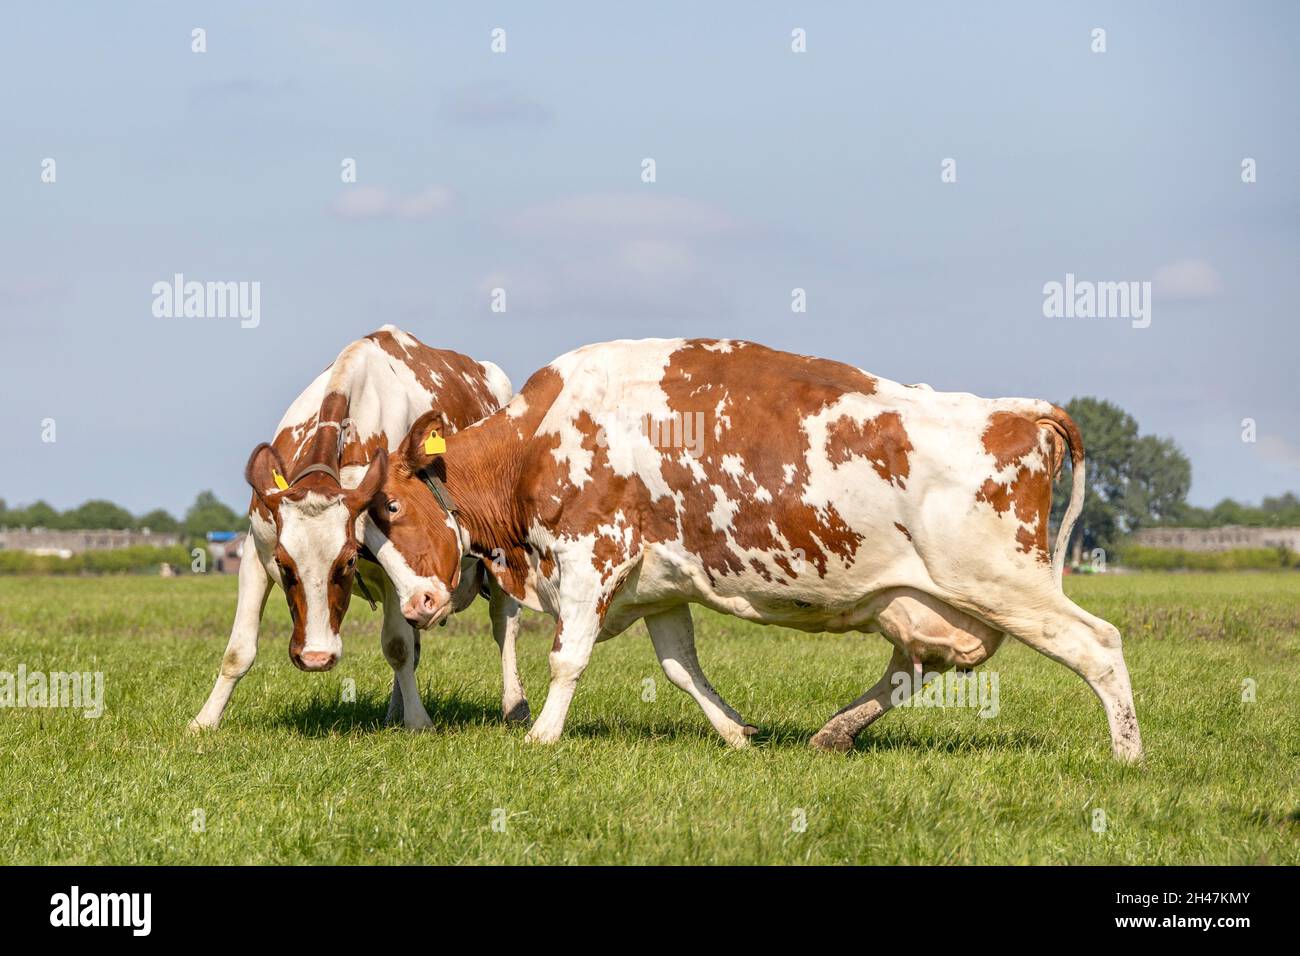 Deux vaches se battant, affrontant des têtes en colère ou jouant en rompant, ensemble dans un pâturage sous un ciel bleu Banque D'Images